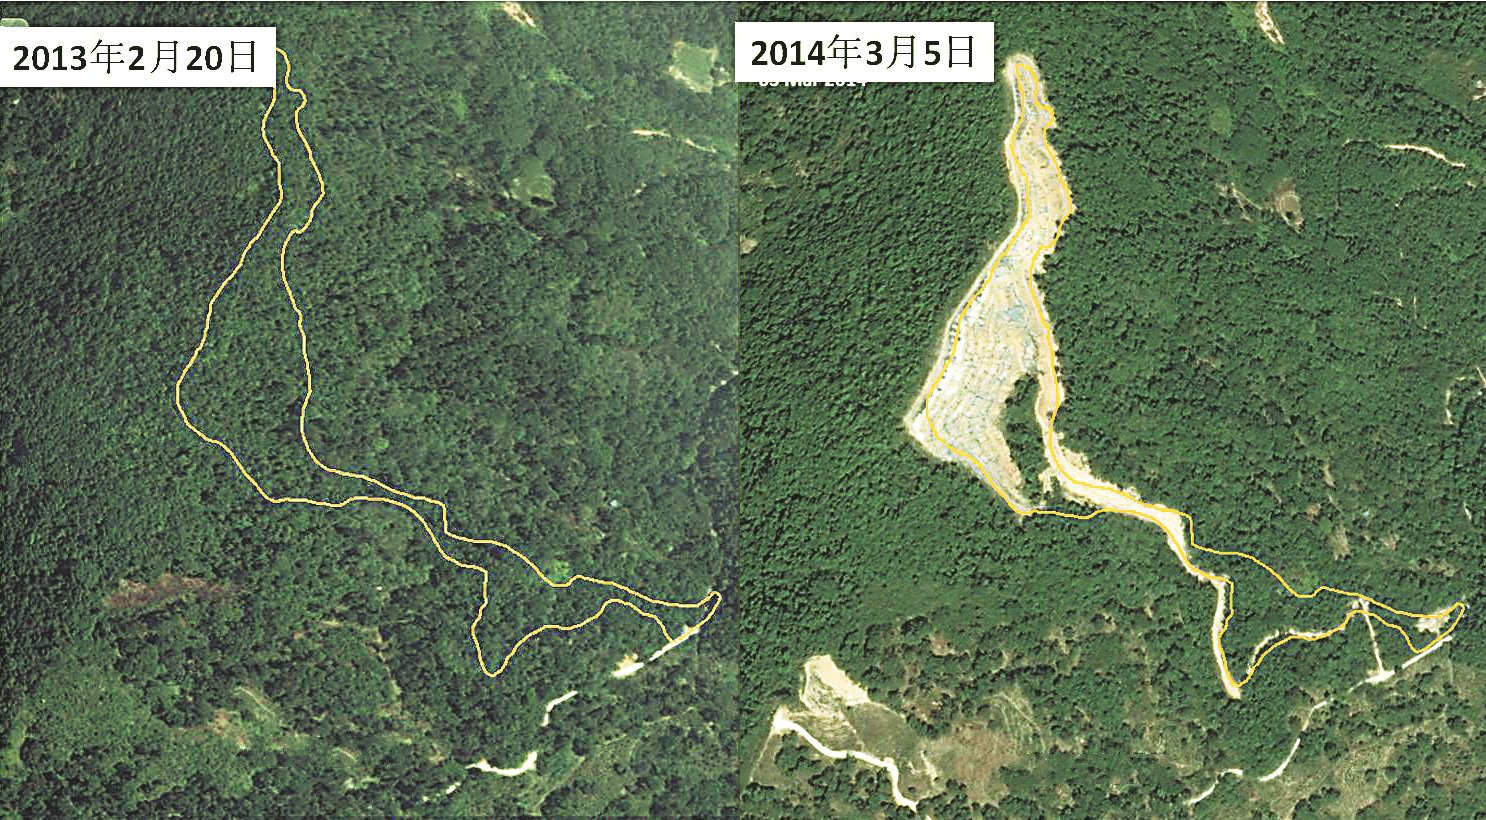 湖内秃头山在2013年2月20日依然是绿油油的森林地，但在2014年3月5日已出现一大片被非法开发的地段，其范围更不断扩大（黄色线为截至2015年8月被开发范围）。